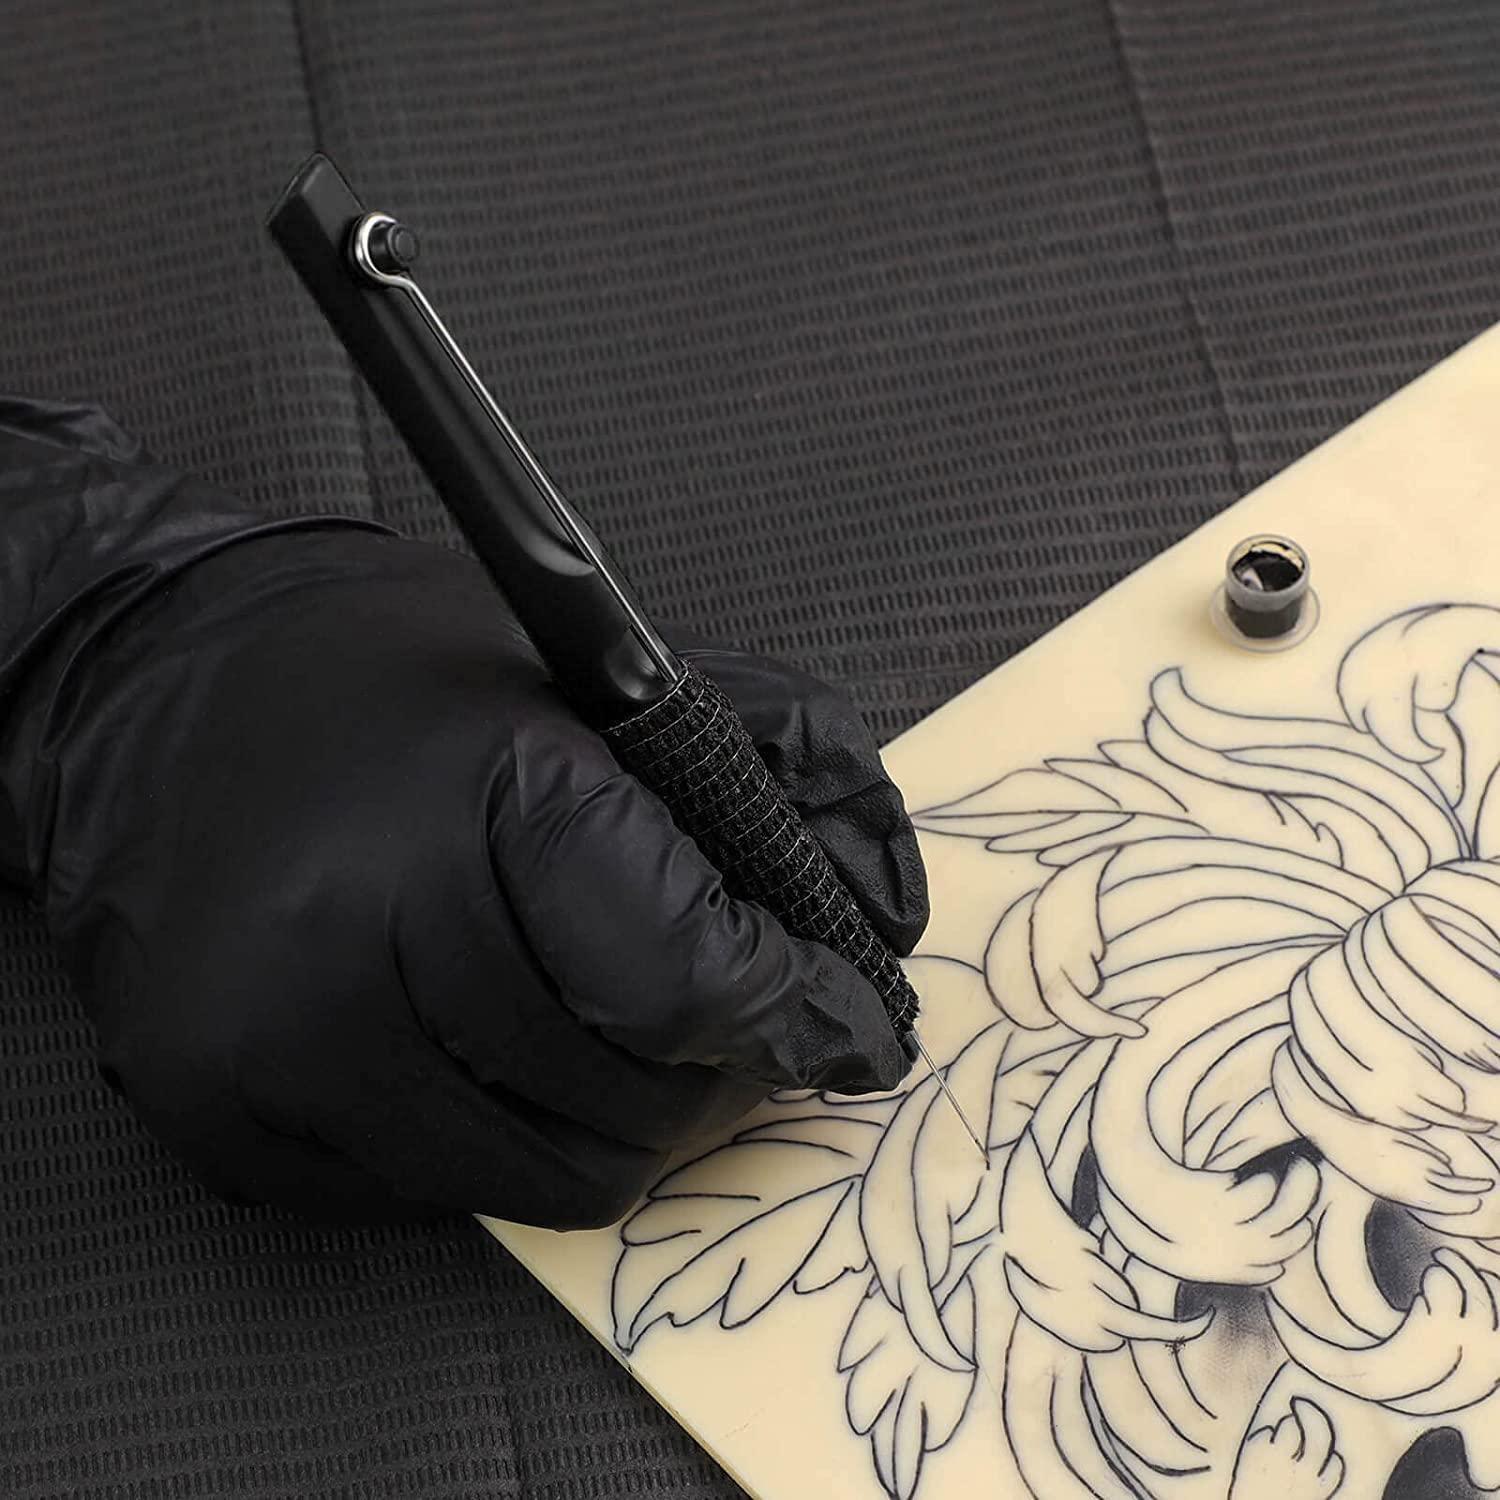 Professional Transfer Paper & Tattoo Needles & Ink Cap Tattoo